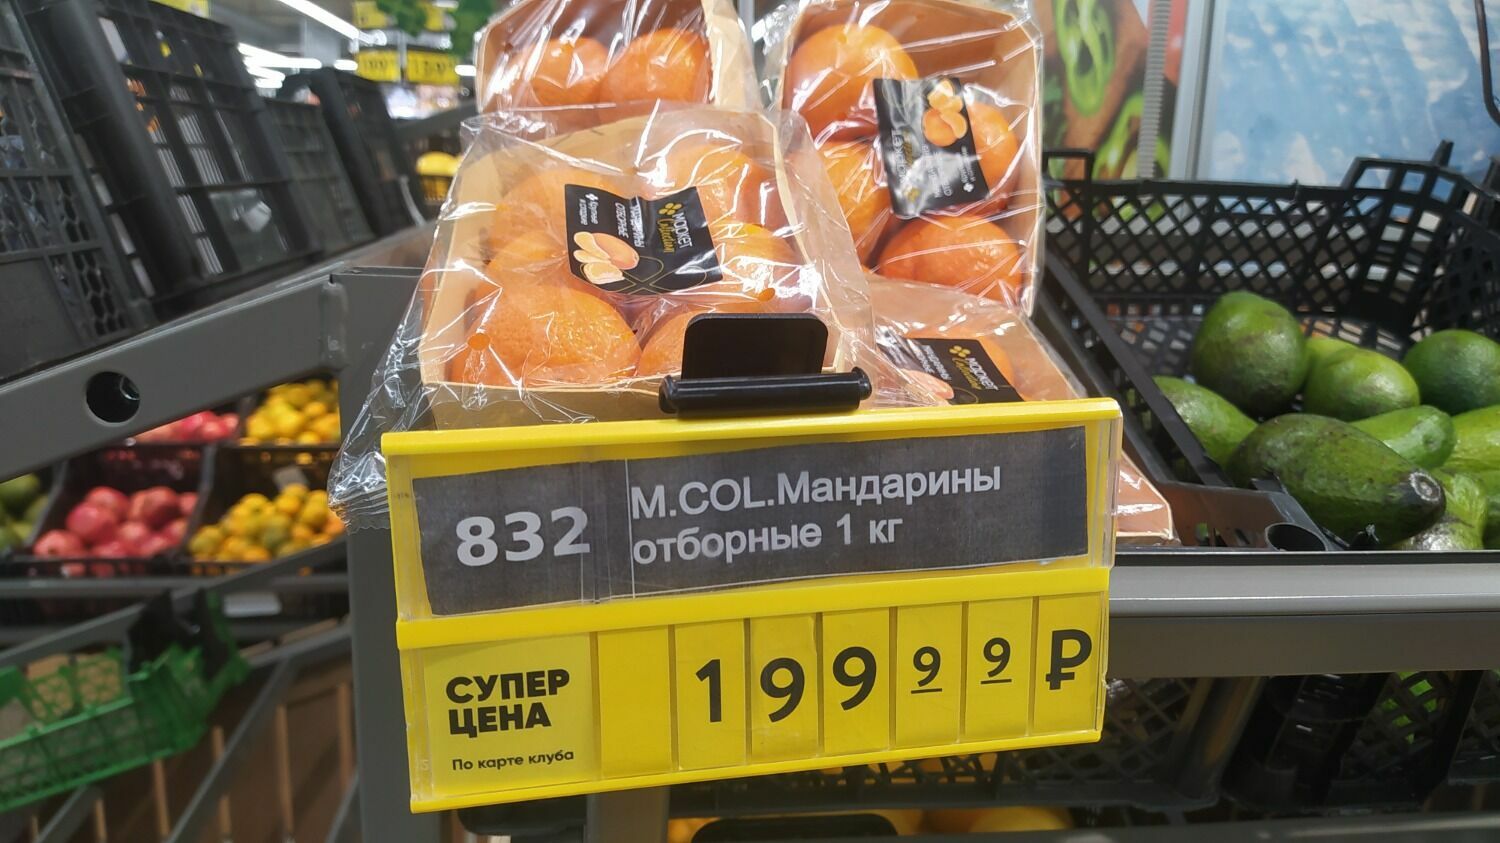 Отборные мандарины в волгоградском «Перекрестке» стоят под 200 руб. за 1 кг